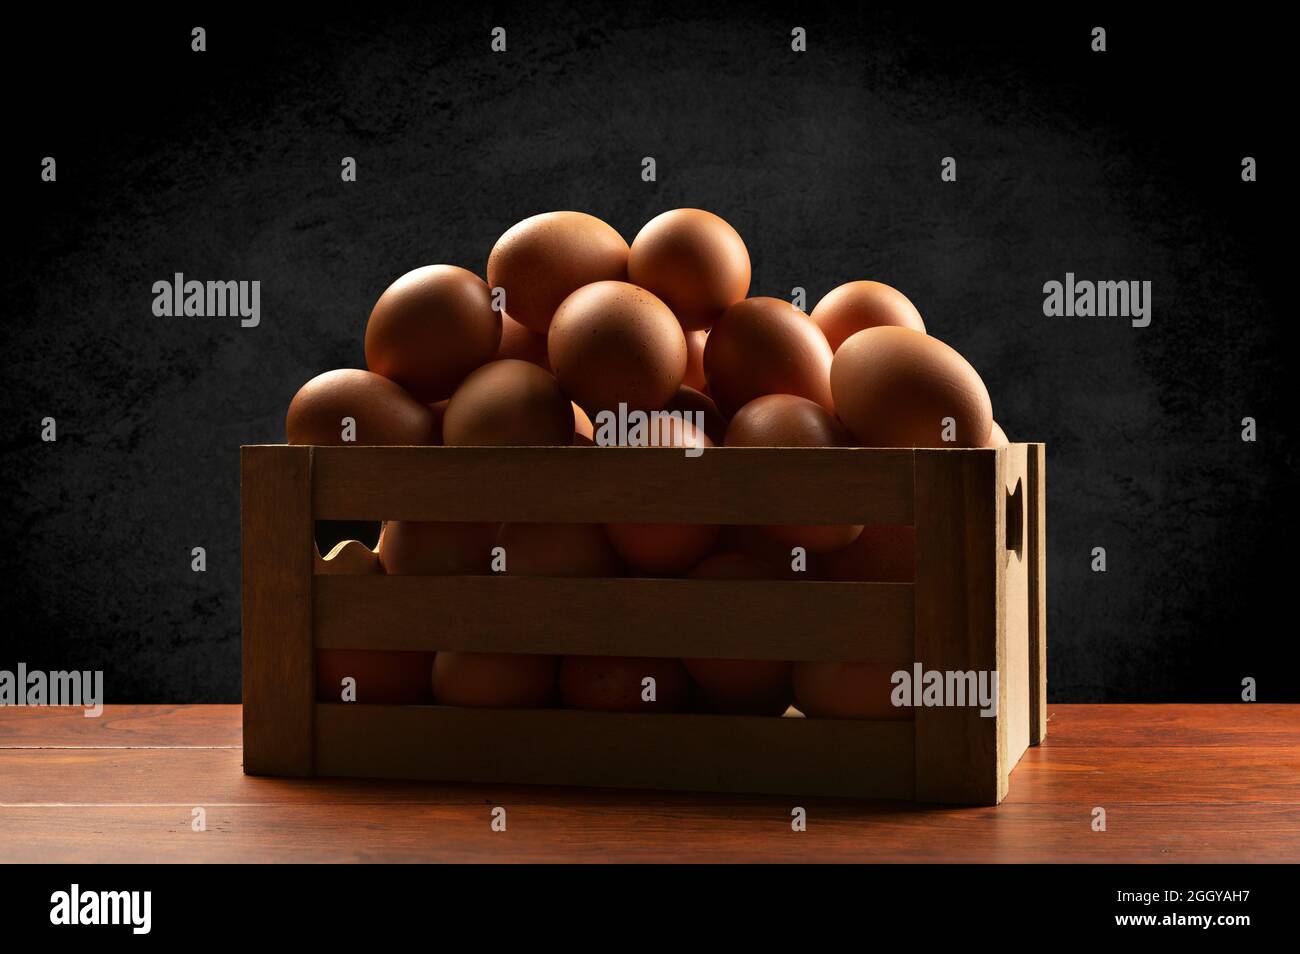 Una pequeña caja marrón de madera de huevos recién recogidos encima de una mesa de teca y enmarcada por un sutil fondo negro moteado. Foto de stock